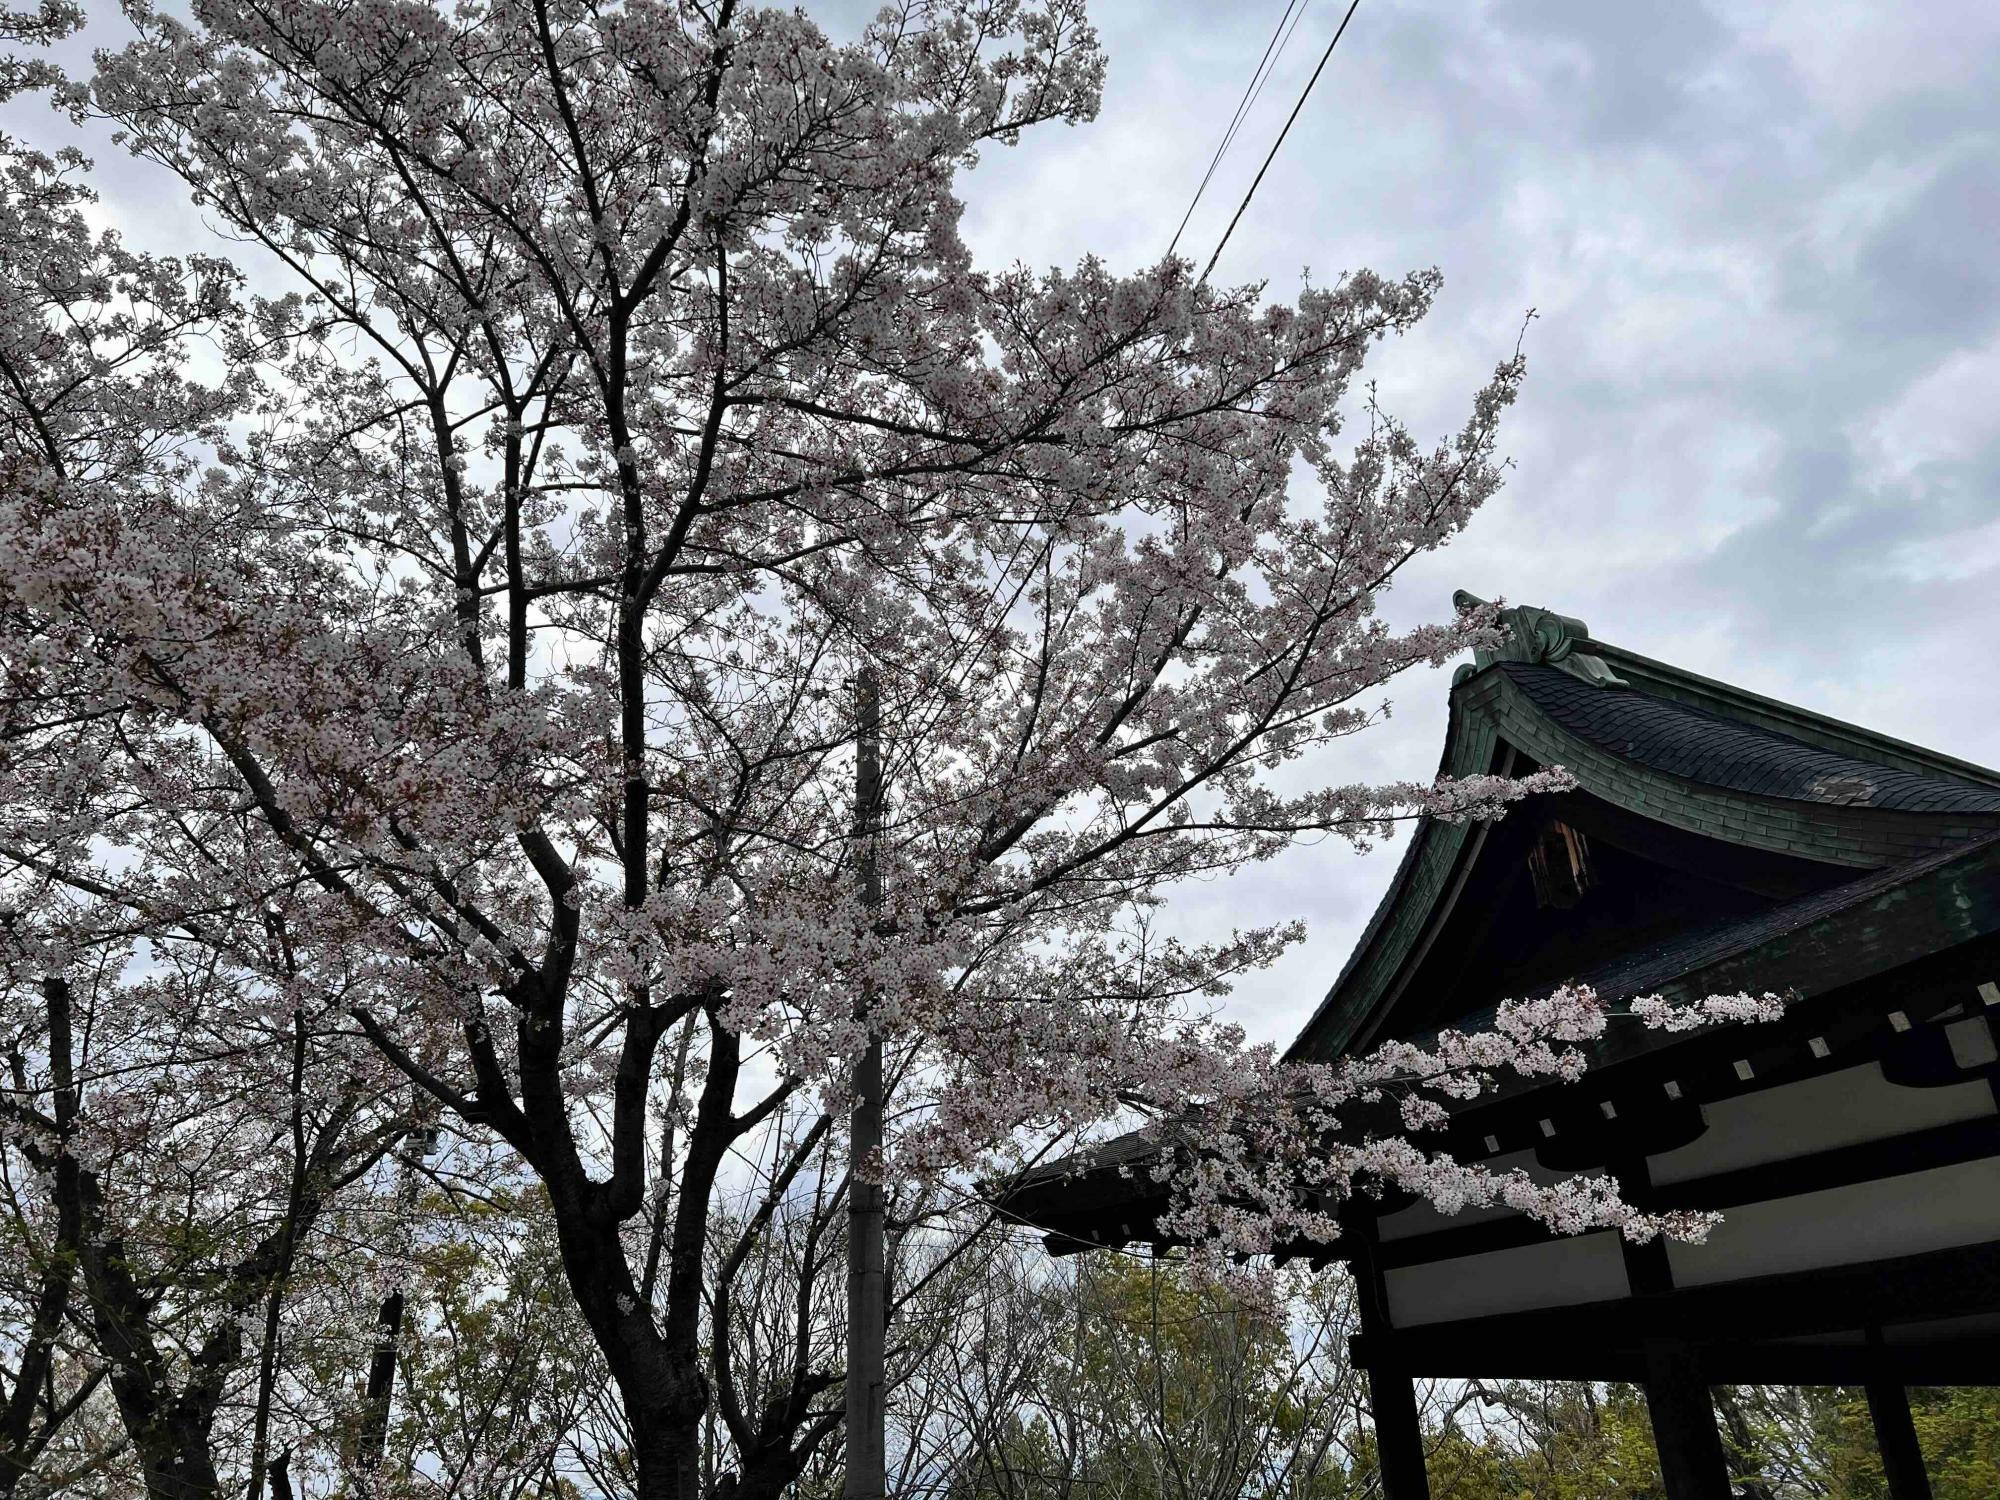 休憩場横の桜の木にはまだ花がいっぱい